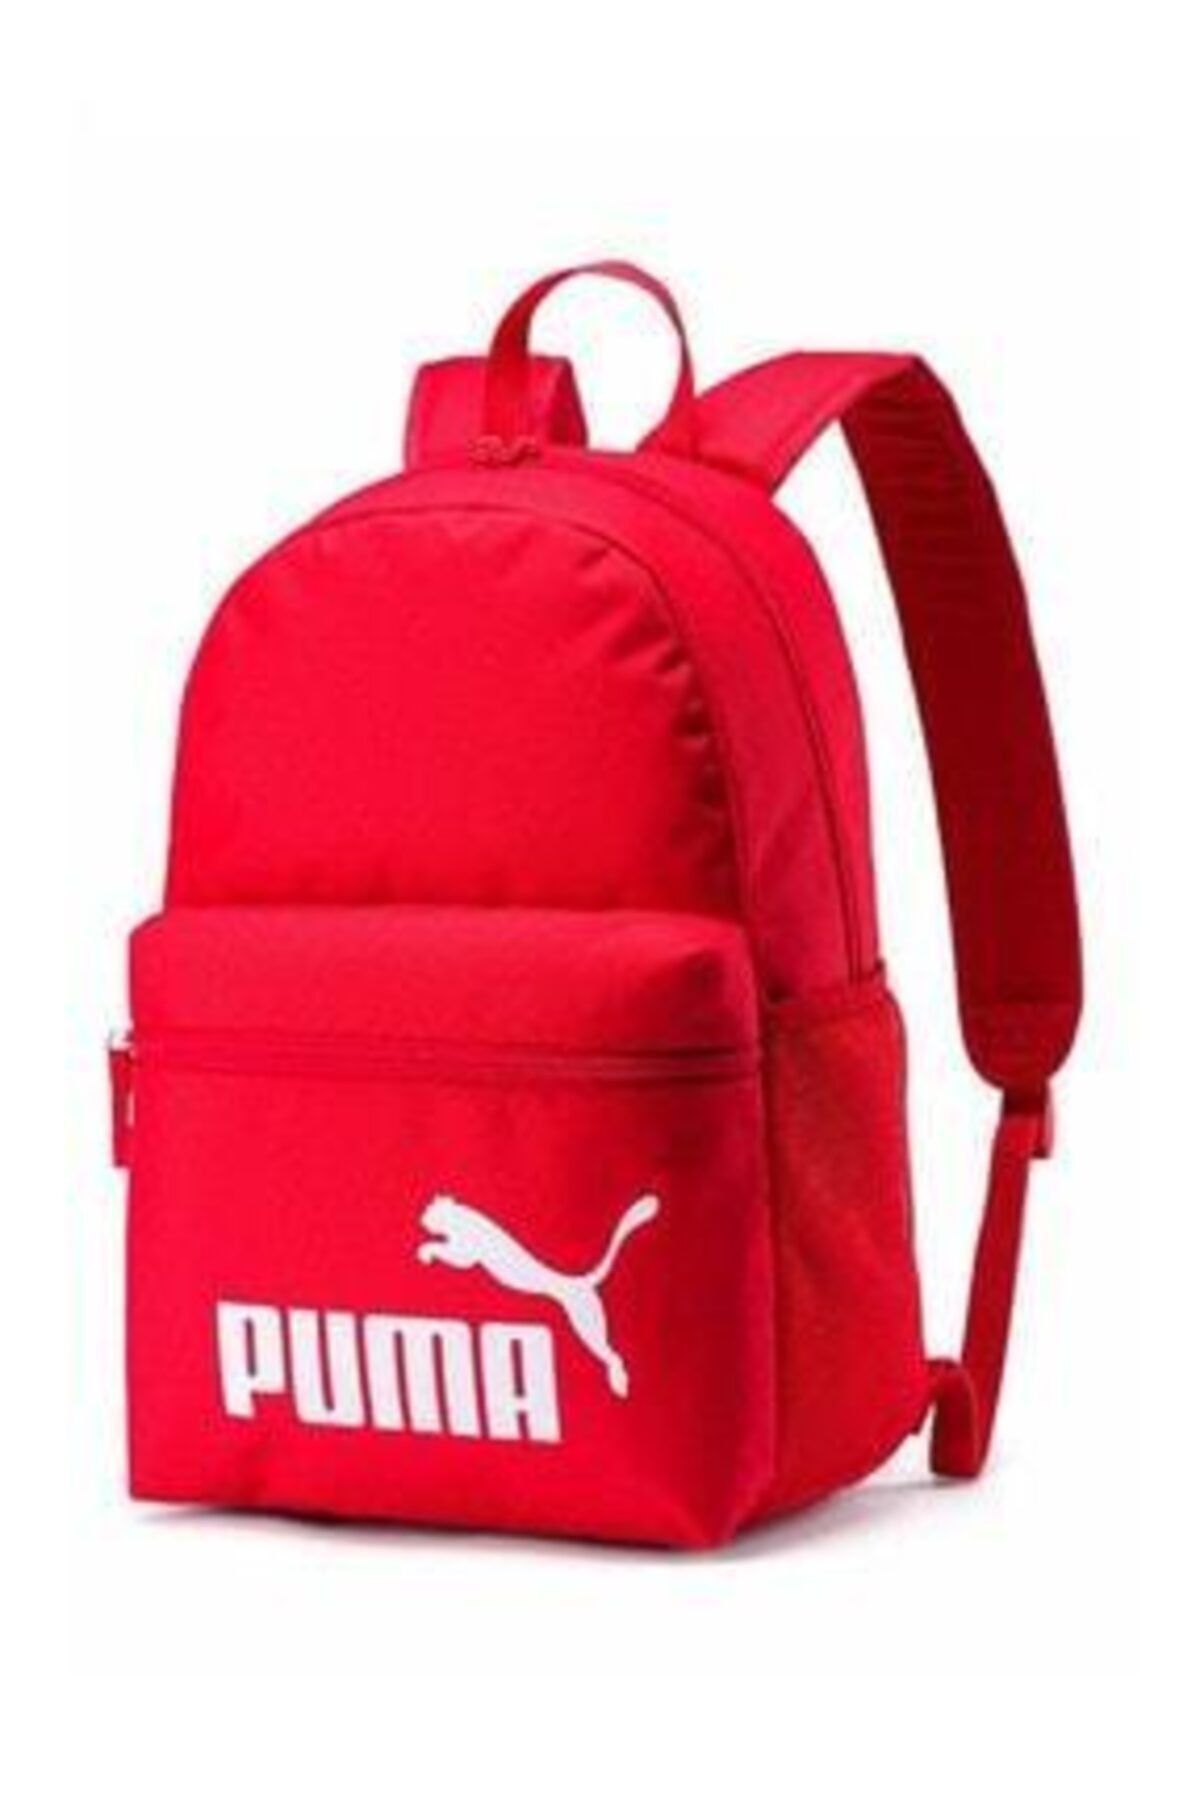 Puma Phase Backpack Sırt Ve Okul Çantası 43x32x13cm 75487-33